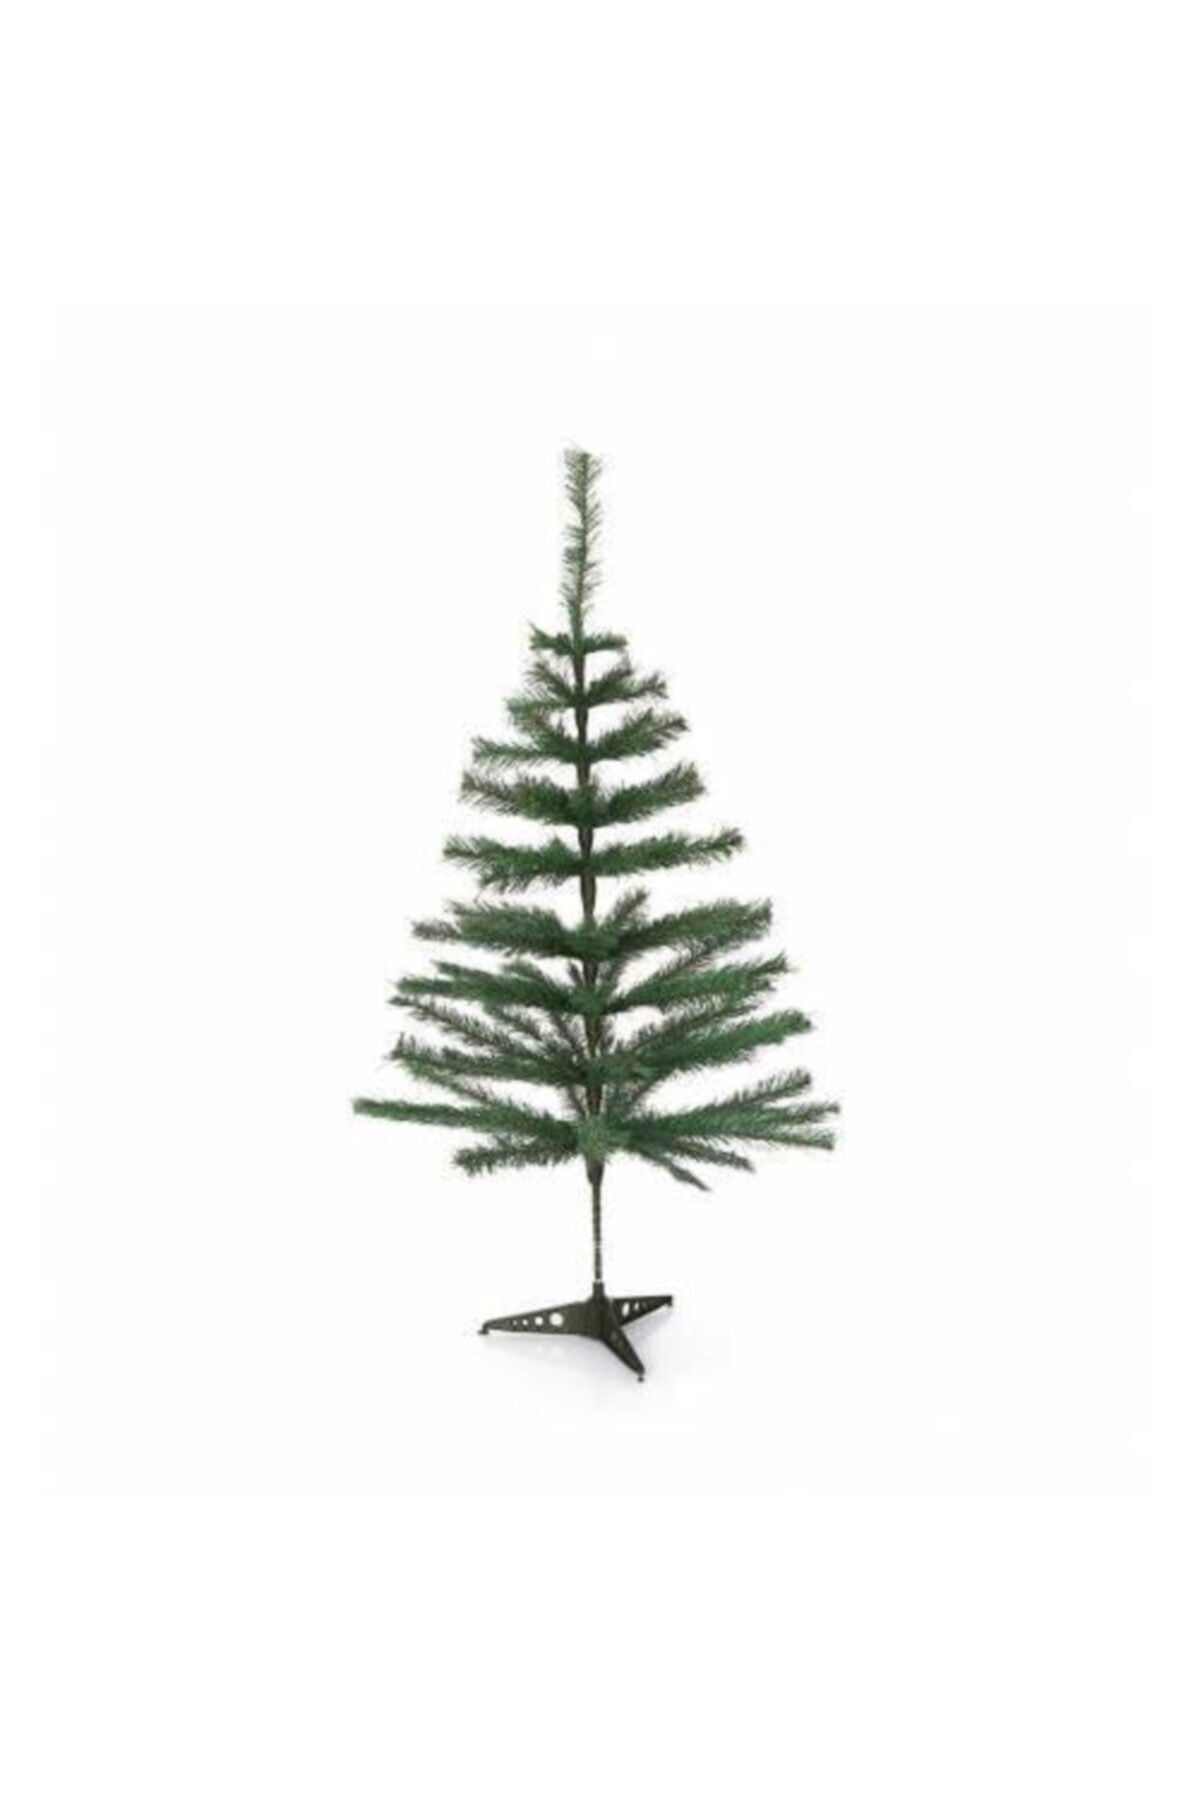 Mashotrend Yılbaşı Çam Ağacı - Christmas Çam Ağacı - Noel Ağacı - 100 Cm 60 Dallı Plastik Ayaklı Çam Ağacı